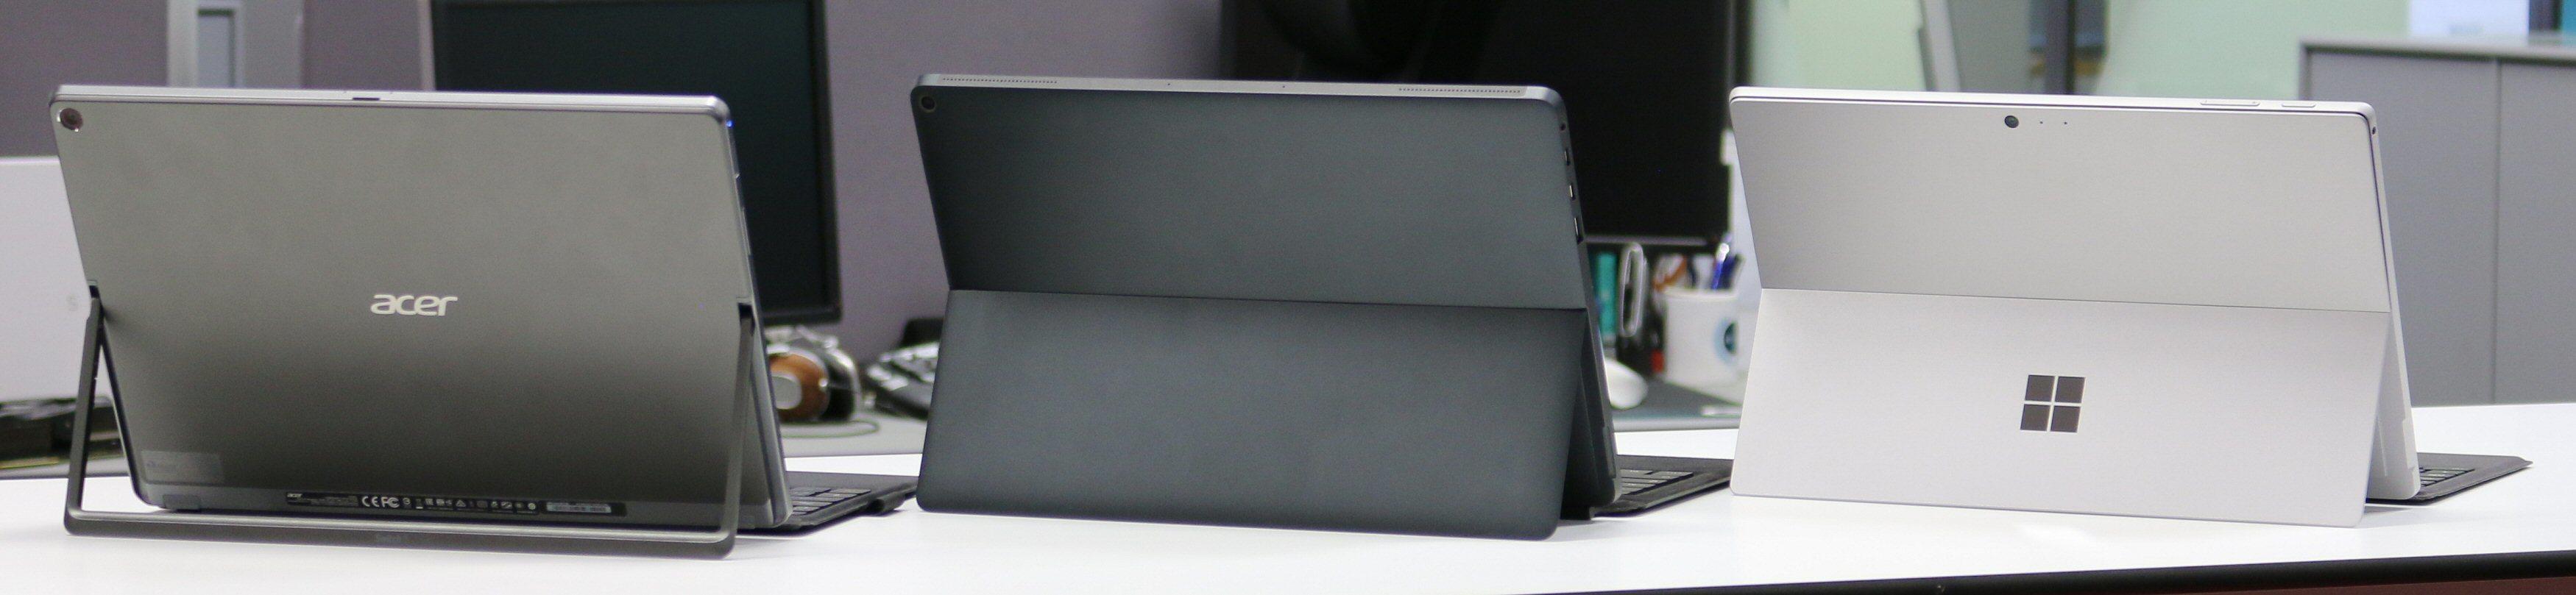 Fra venstre: Acer Switch 5, Eve-Tech Eve V og Microsoft Surface Pro. Bilde: Vegar Jansen, Tek.no